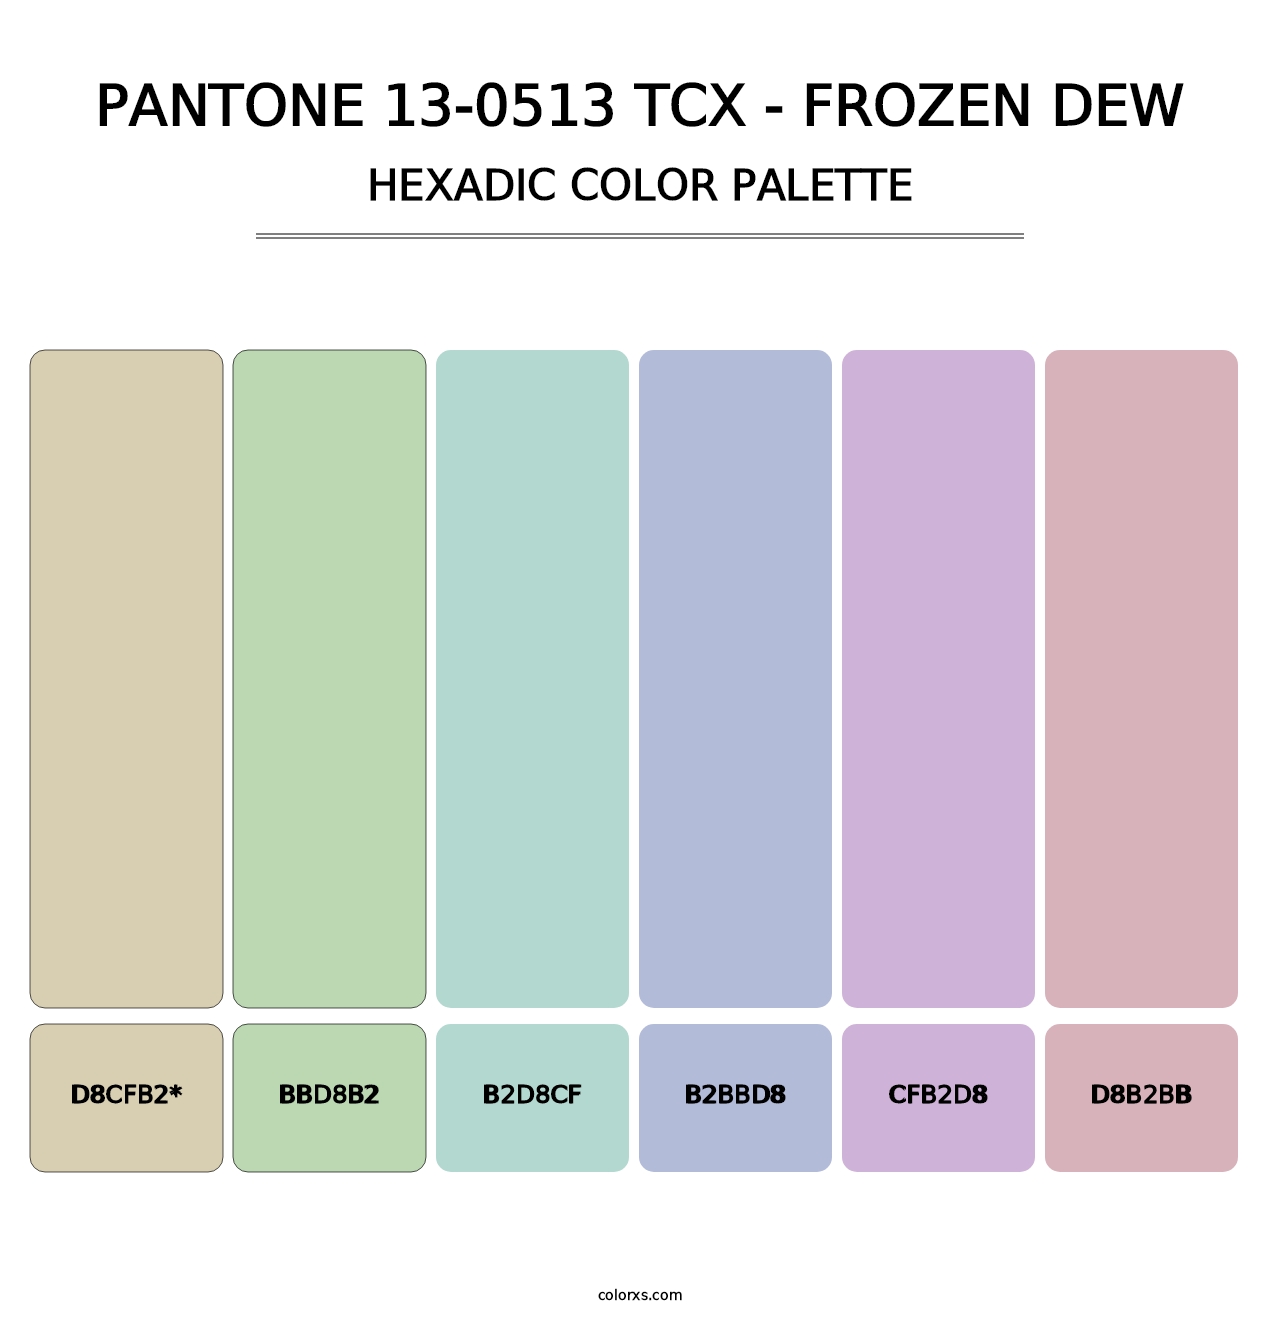 PANTONE 13-0513 TCX - Frozen Dew - Hexadic Color Palette